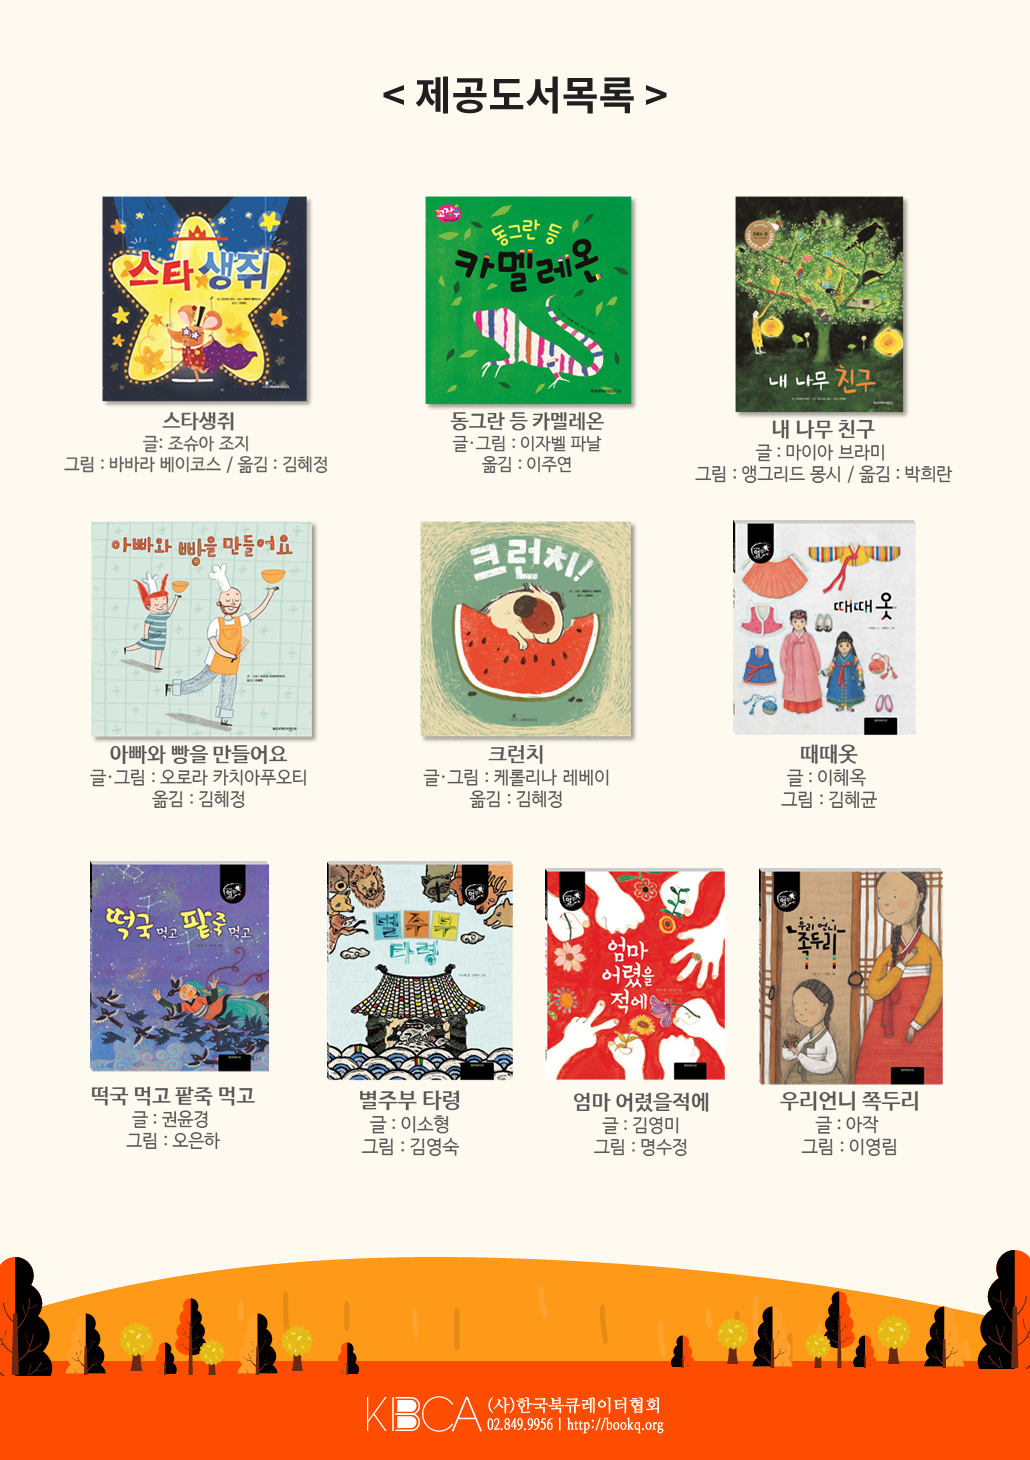 아이가 행복한 1000권 독서챌린지 (10월 1일부터 시작)